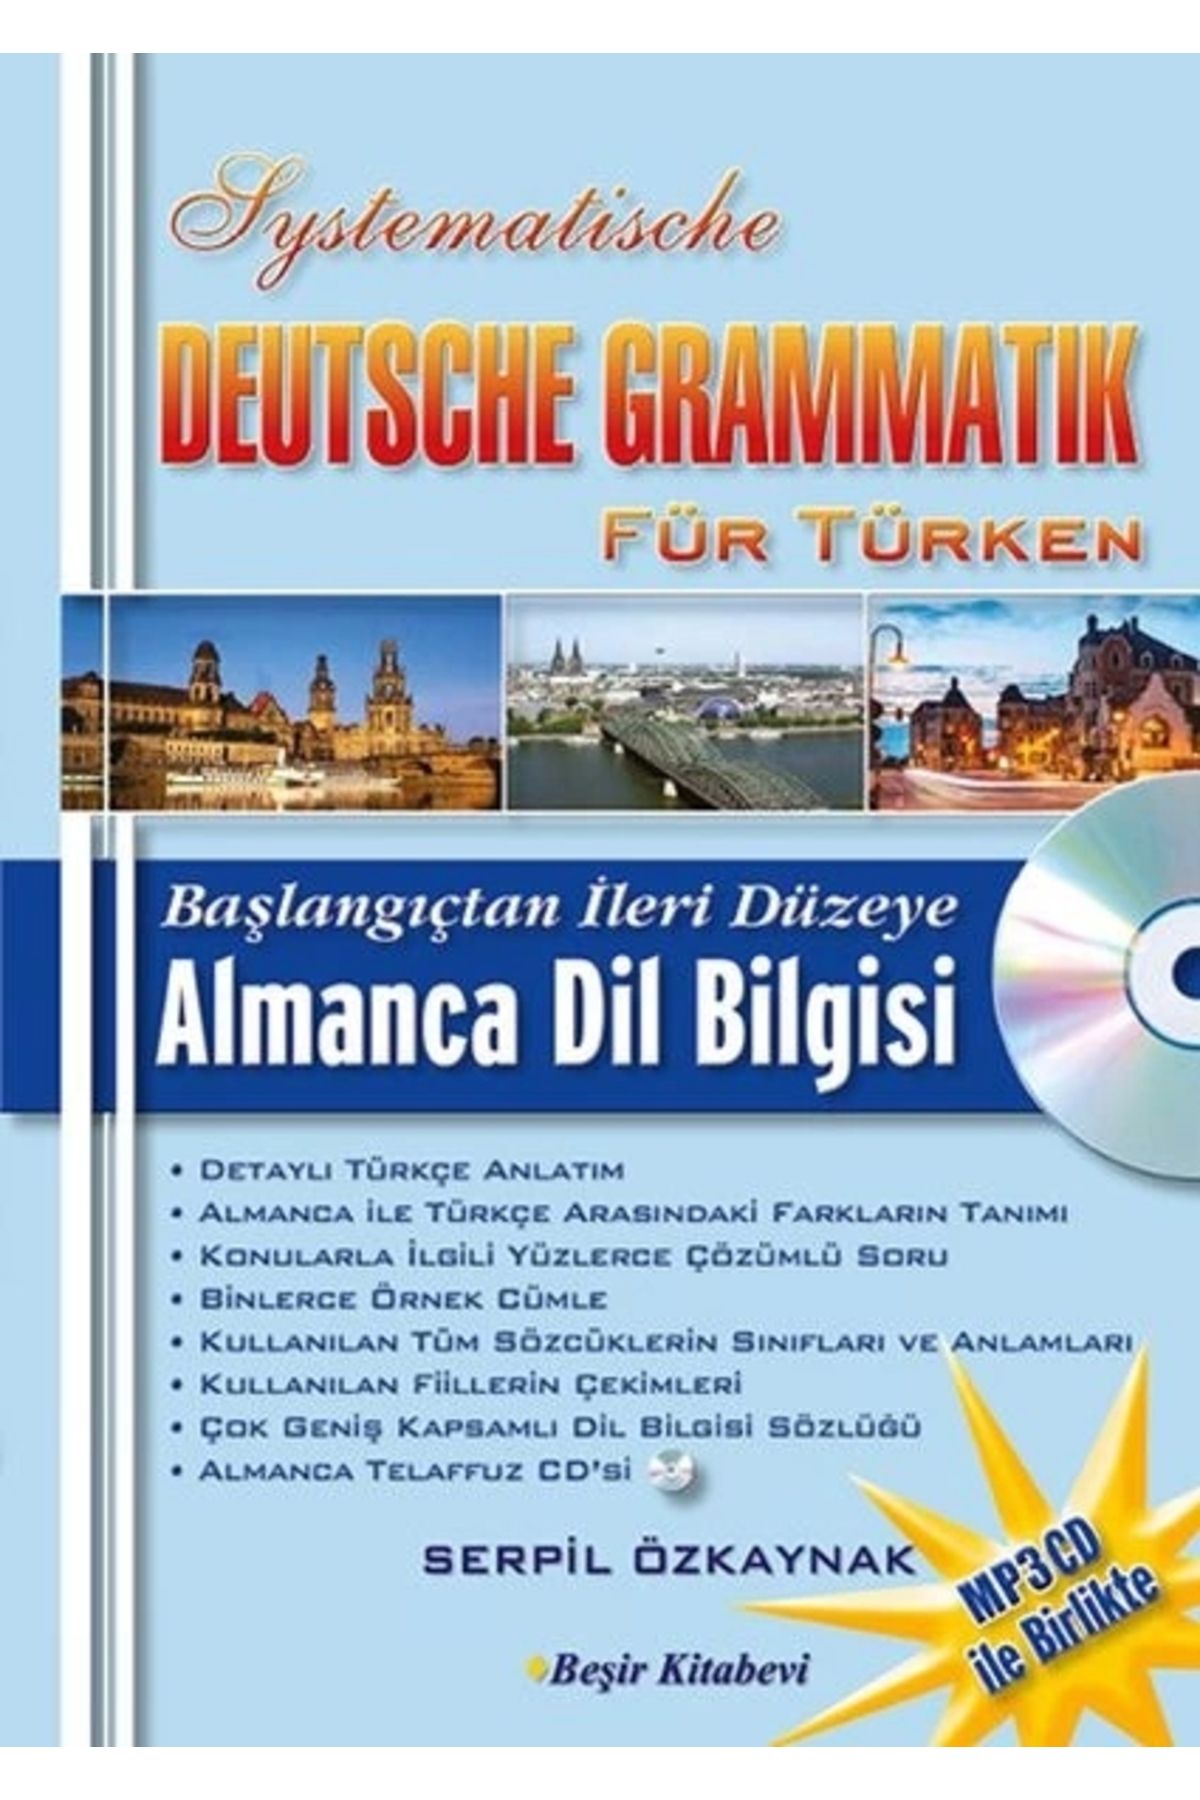 Beşir Kitabevi Başlangıçtan İleri Düzeye Almanca Dil Bilgisi CD'li